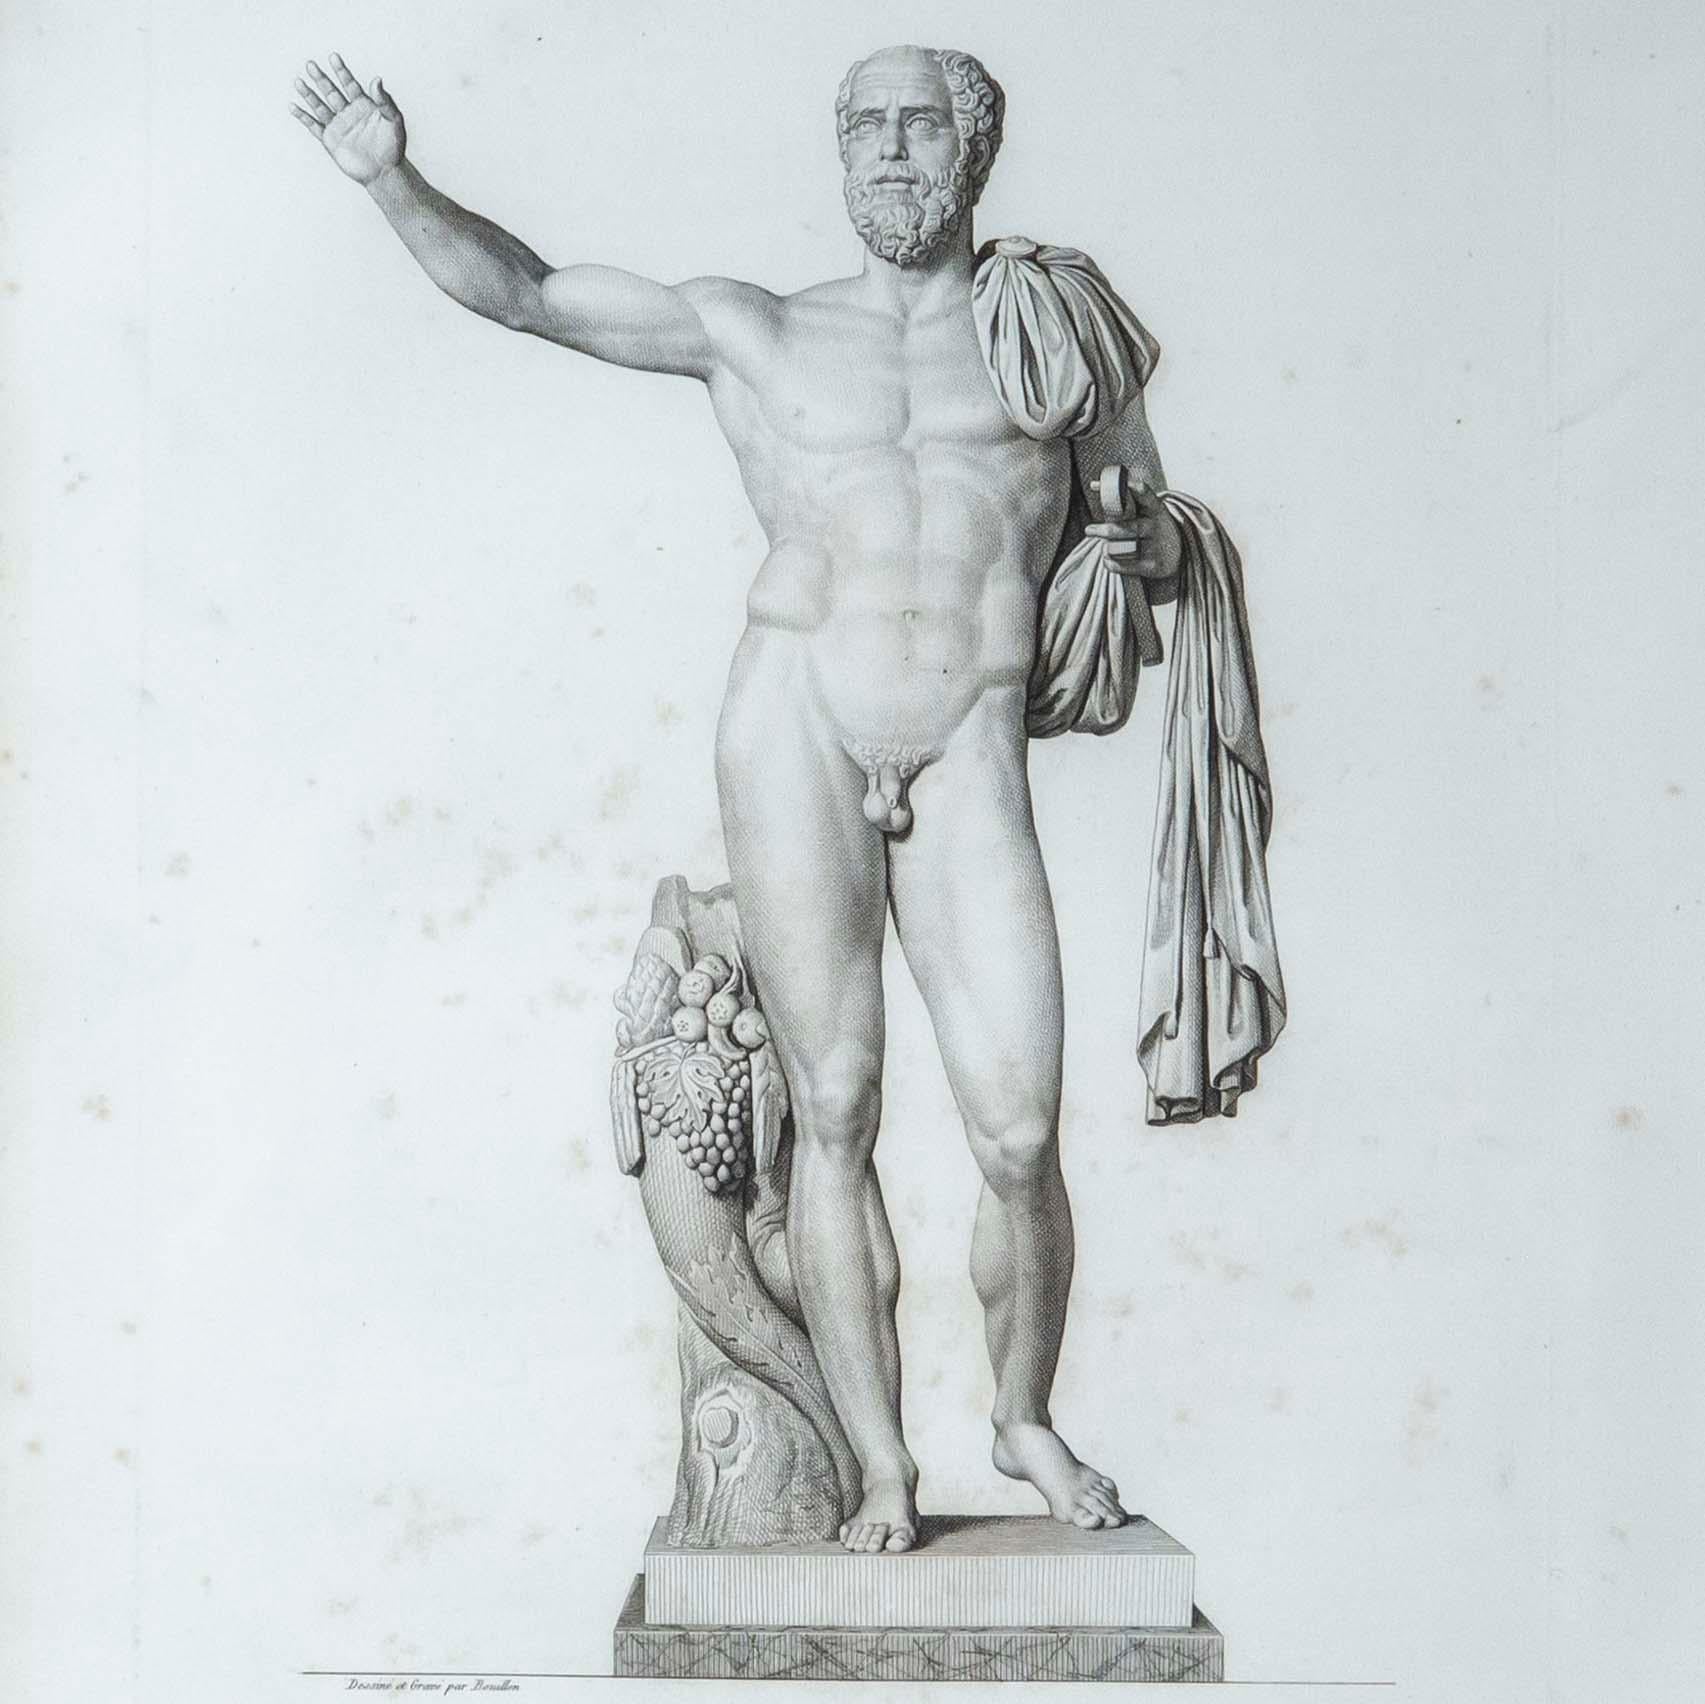 Deux exquises et rares gravures de sculptures antiques par Pierre Bouillon (1776-1831), tirées de son livre Musée des antiques, publié à Paris entre 1811 et 1827. Les deux planches, intitulées Pupien et Pêcheur africain, représentent les statues de